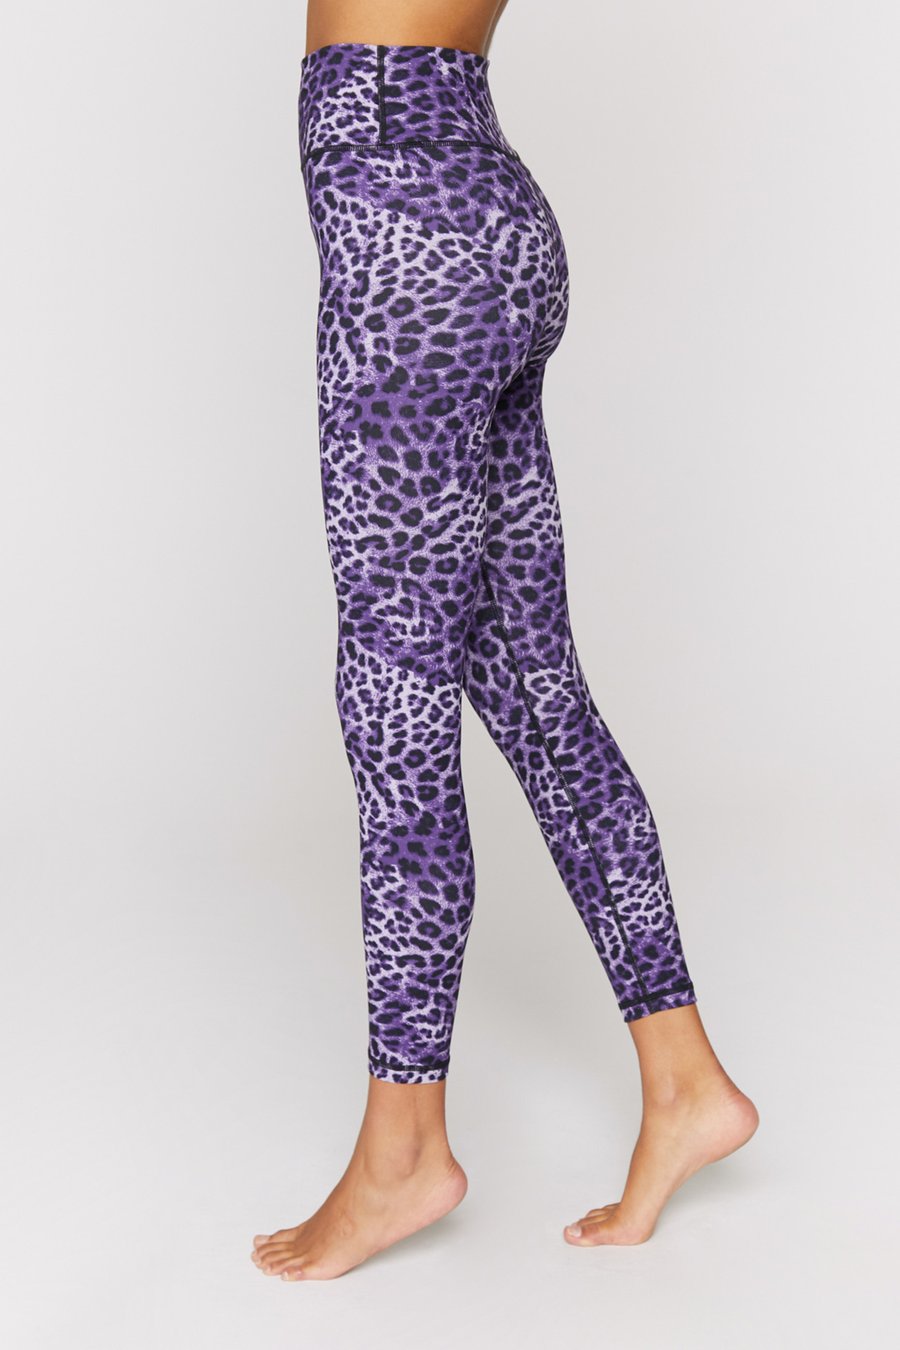 Spiritual Gangster Lavender Cheetah High Waist 7/8 Legging